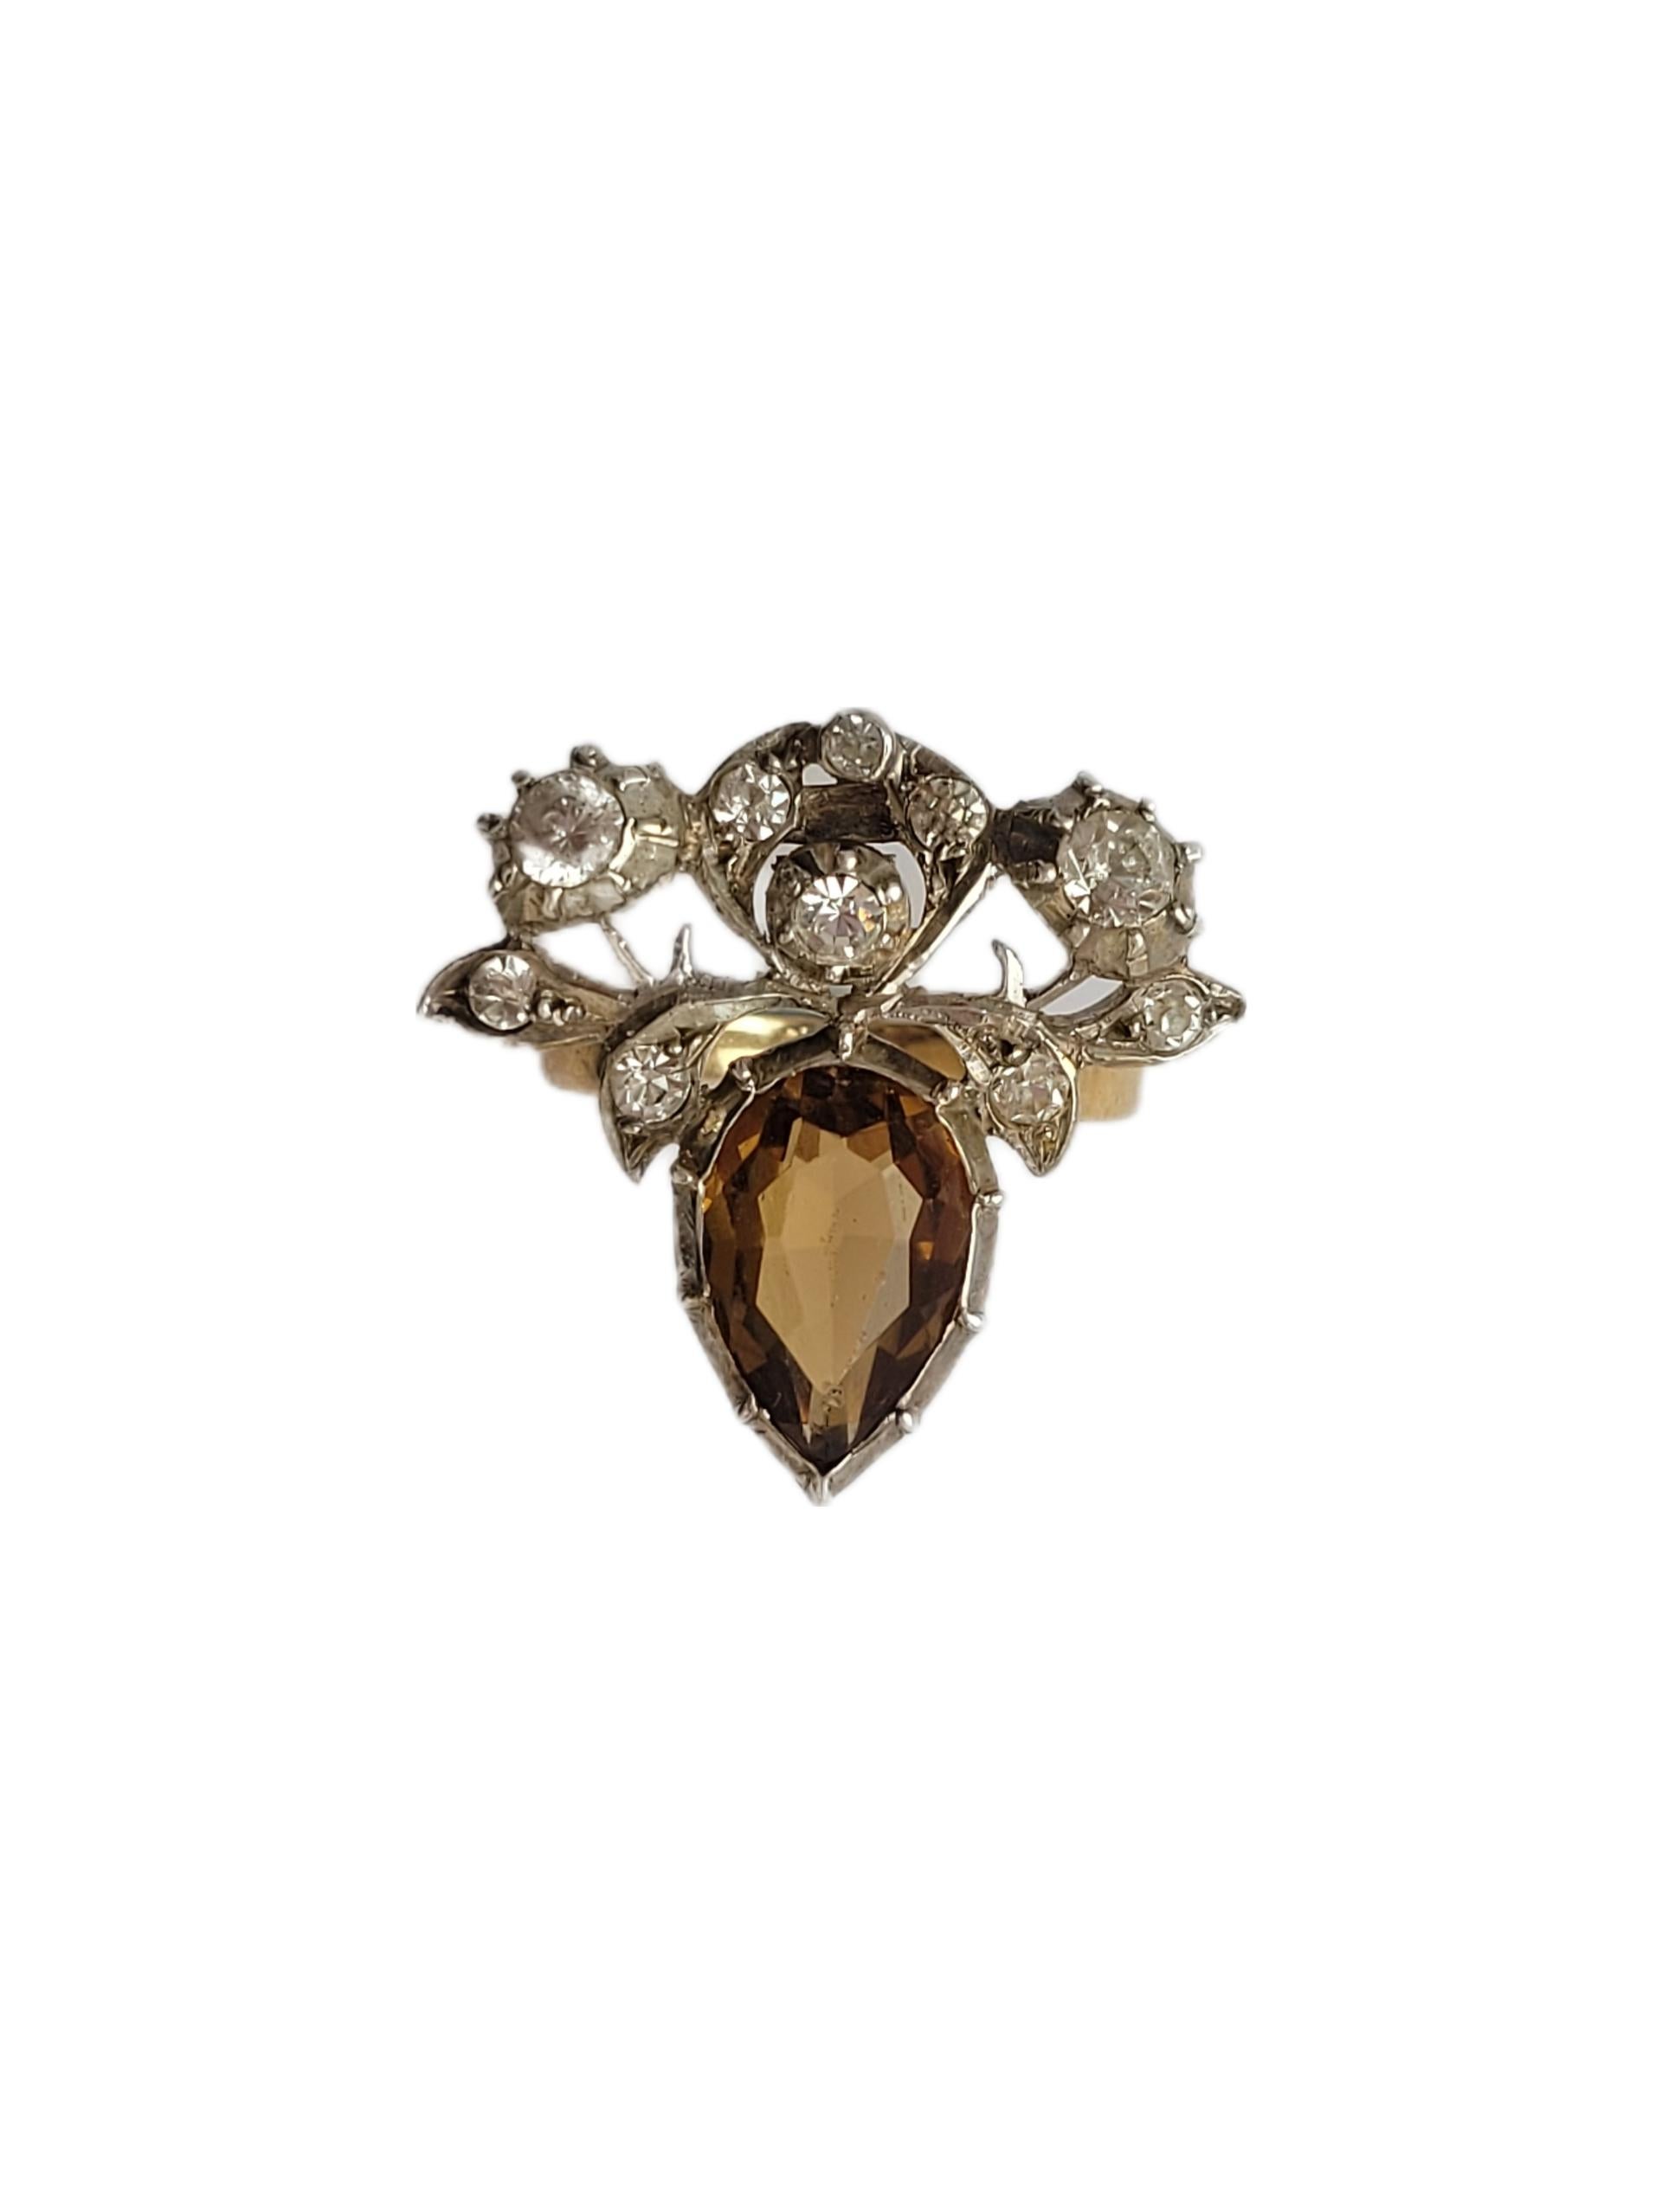 Ein atemberaubender Herzring aus 9 Karat Gold, Silber und Paste. Dies ist ein Art Deco Kleid Clip Umwandlung. Der Ring ist im georgianischen Stil gefertigt. Ein Unikat. Englischer Ursprung.
Größe Q 3/4 UK, 8.75 US kann angepasst werden.
Fläche des